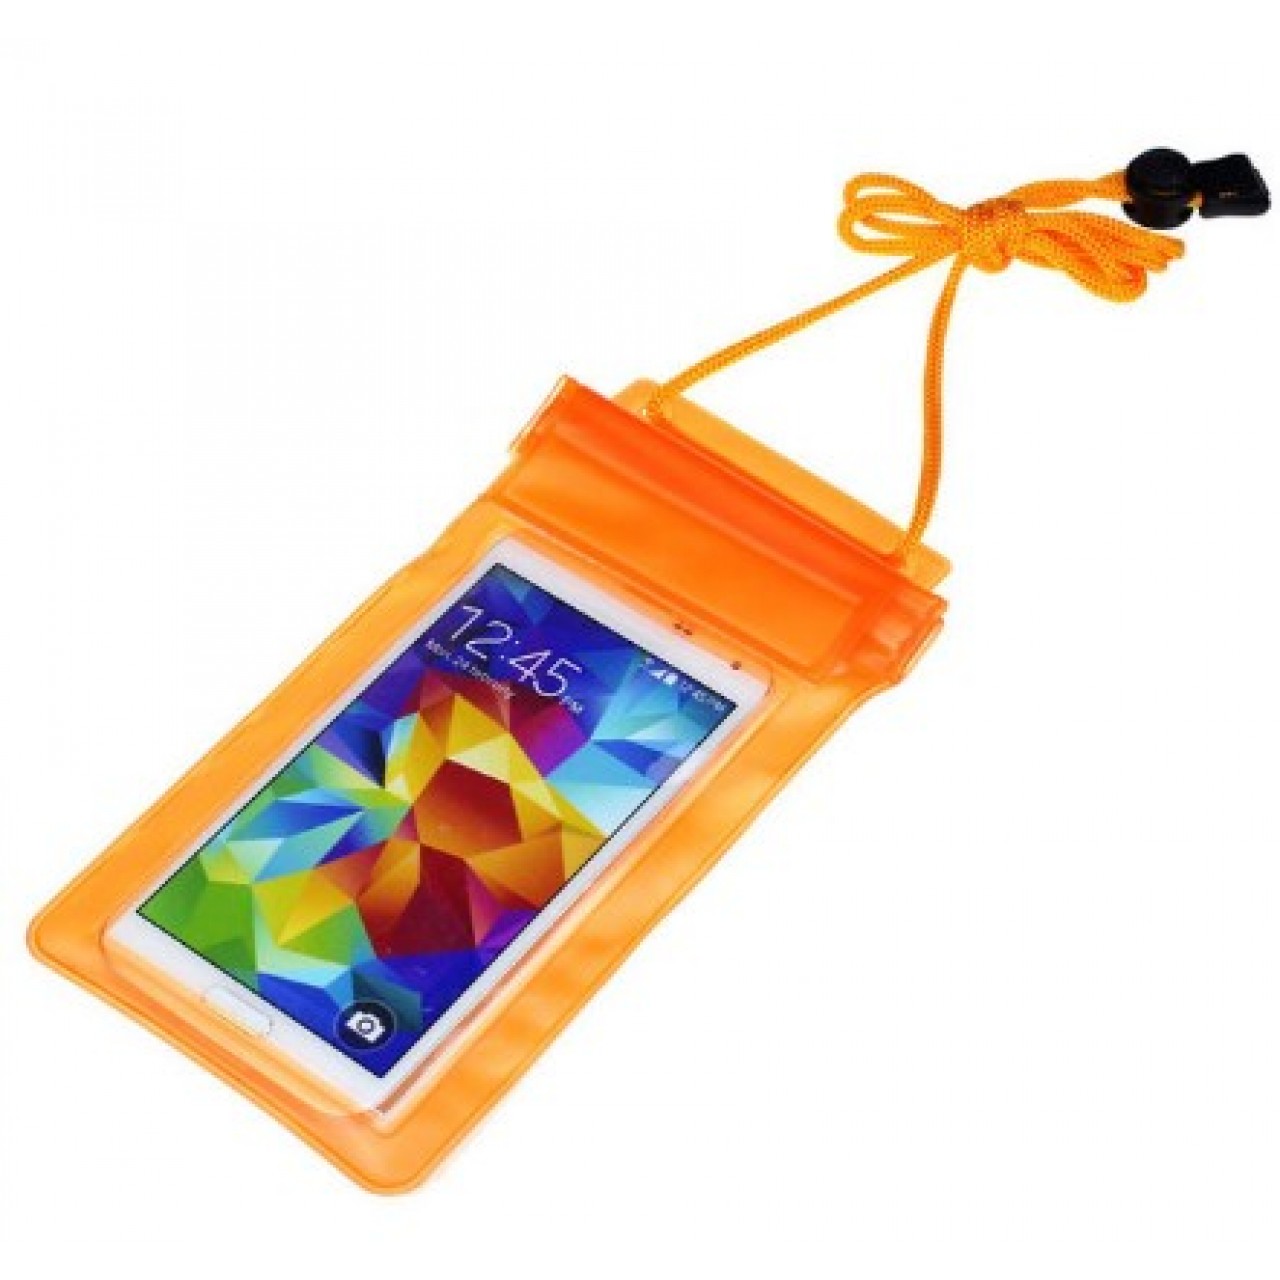 θήκη Universal Αδιάβροχη Πλαστική για κινητό έως 6 ίντσες - 2575 - Πορτοκαλί - OEM